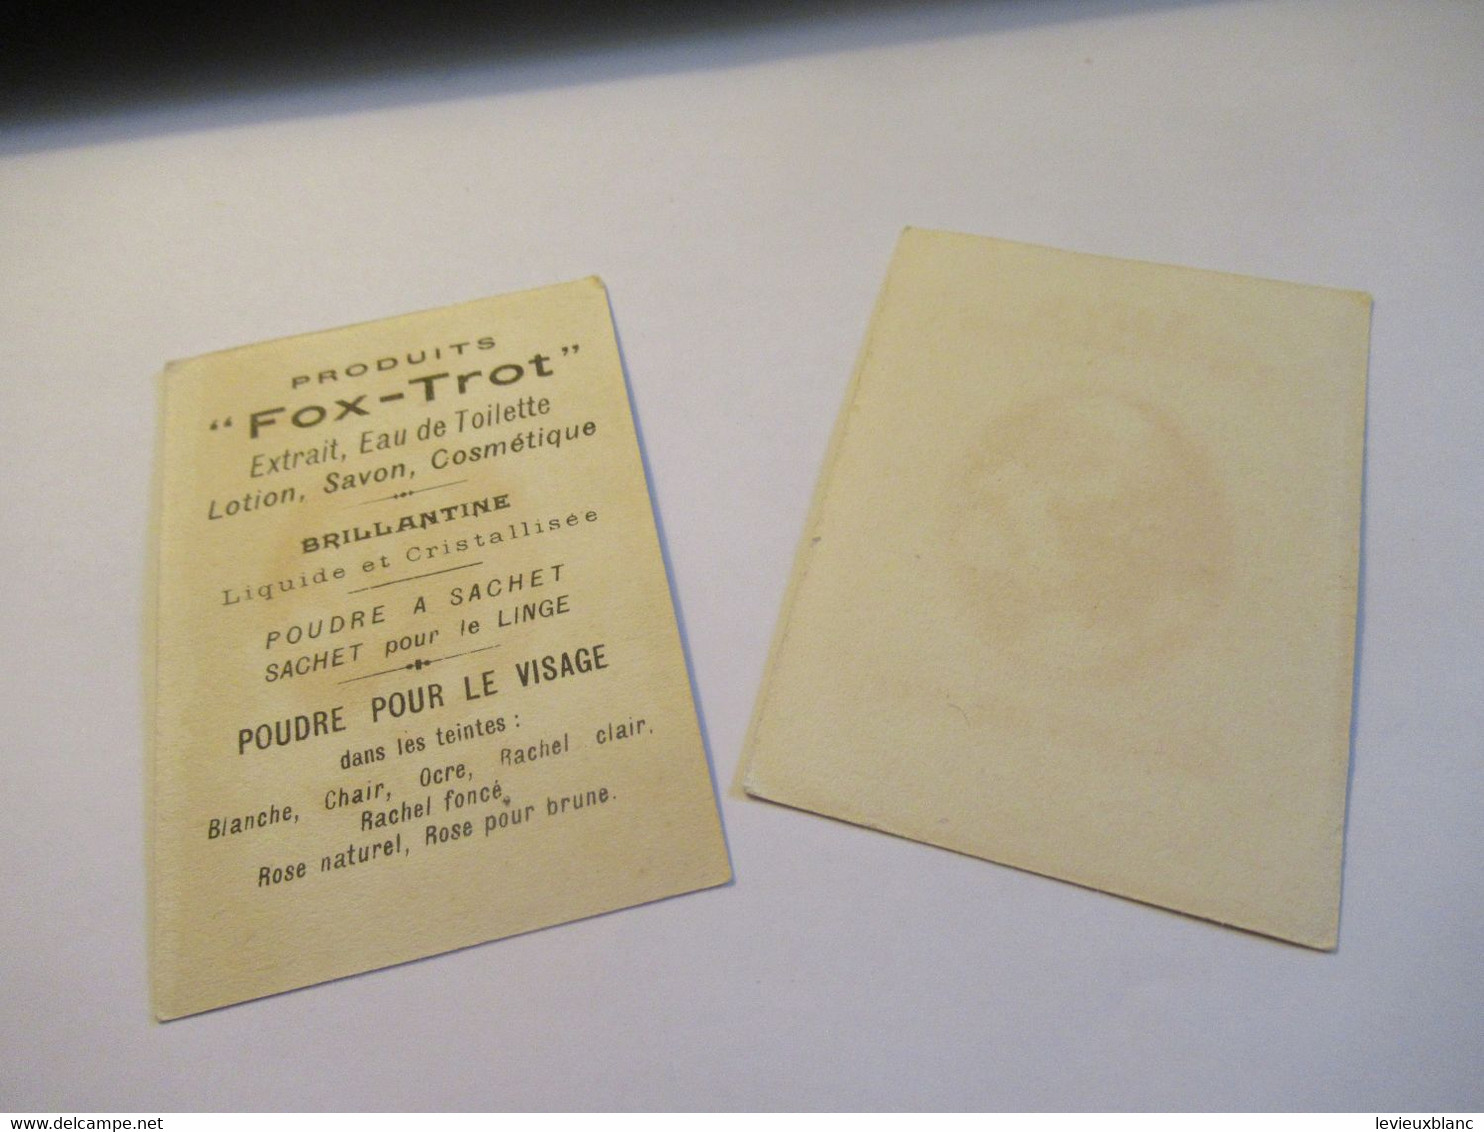 2 Petites Cartes Publicitaires Parfumées/ ARYS, 2 Rue De La Paix Paris/Fox-Trot/ Faisons Un Rêve/Vers 1920   PARF240 - Antiquariat (bis 1960)